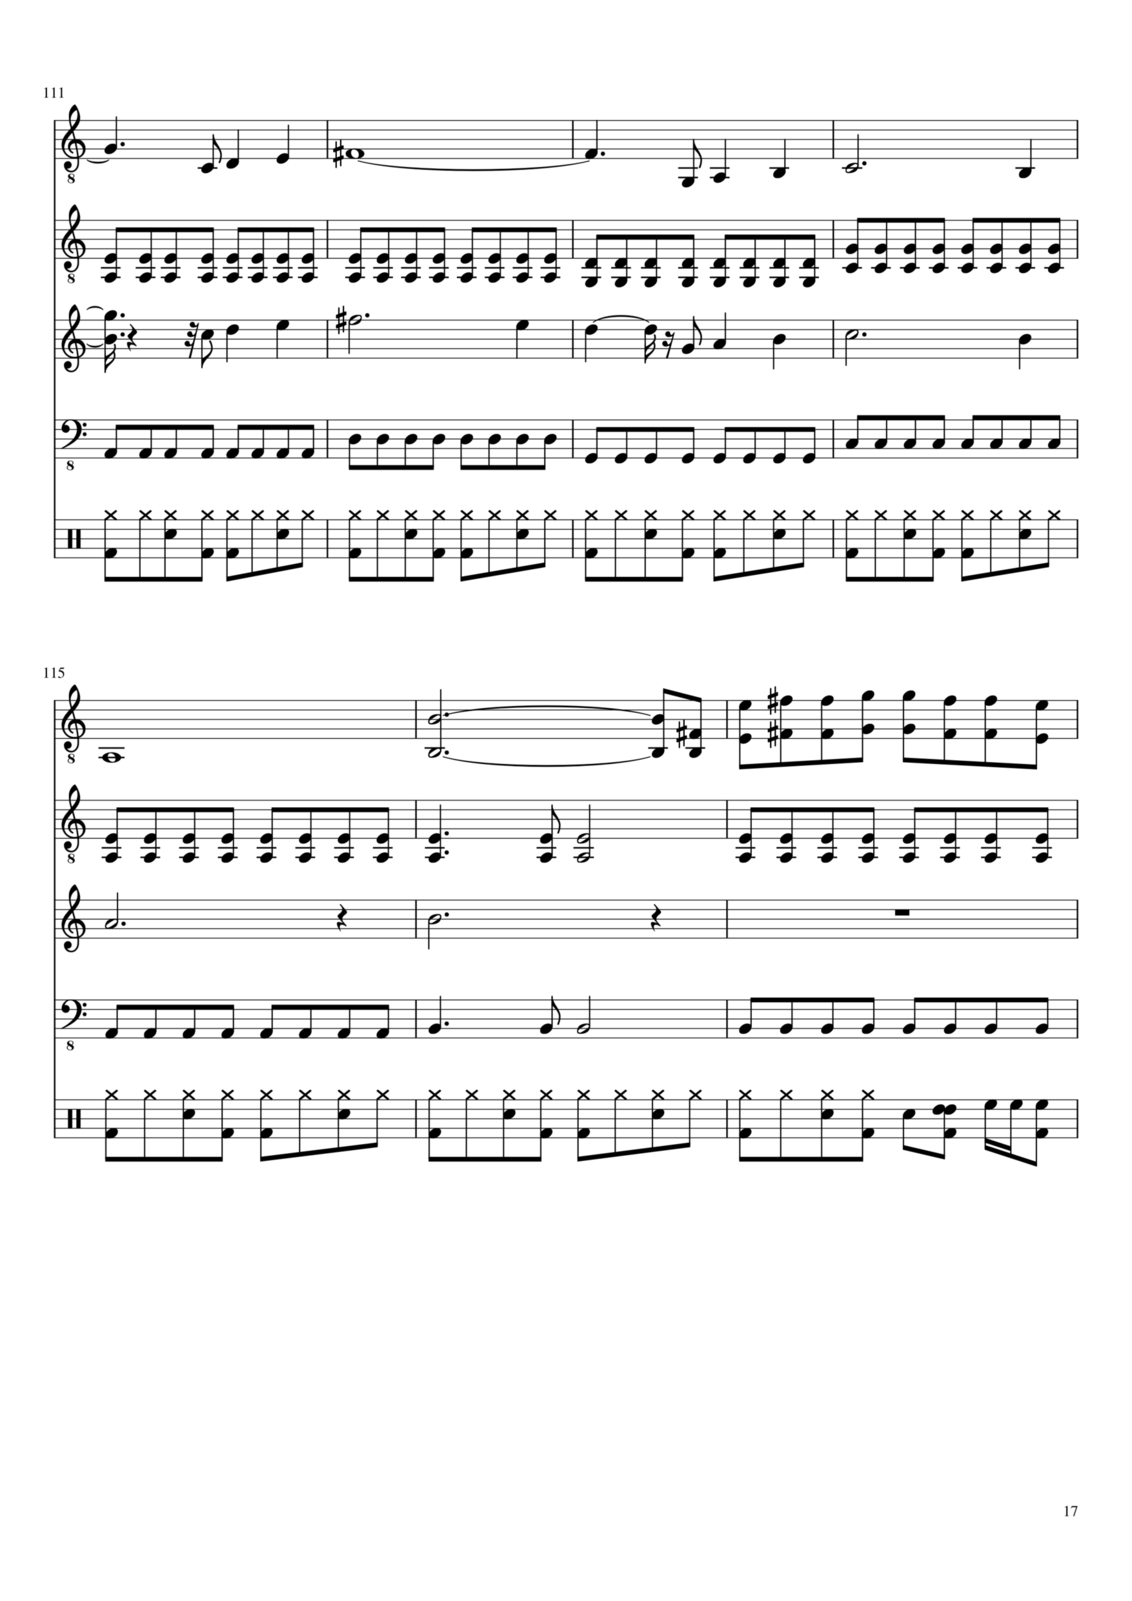 Vospominaniya o byiloy lyubvi slide, Image 17